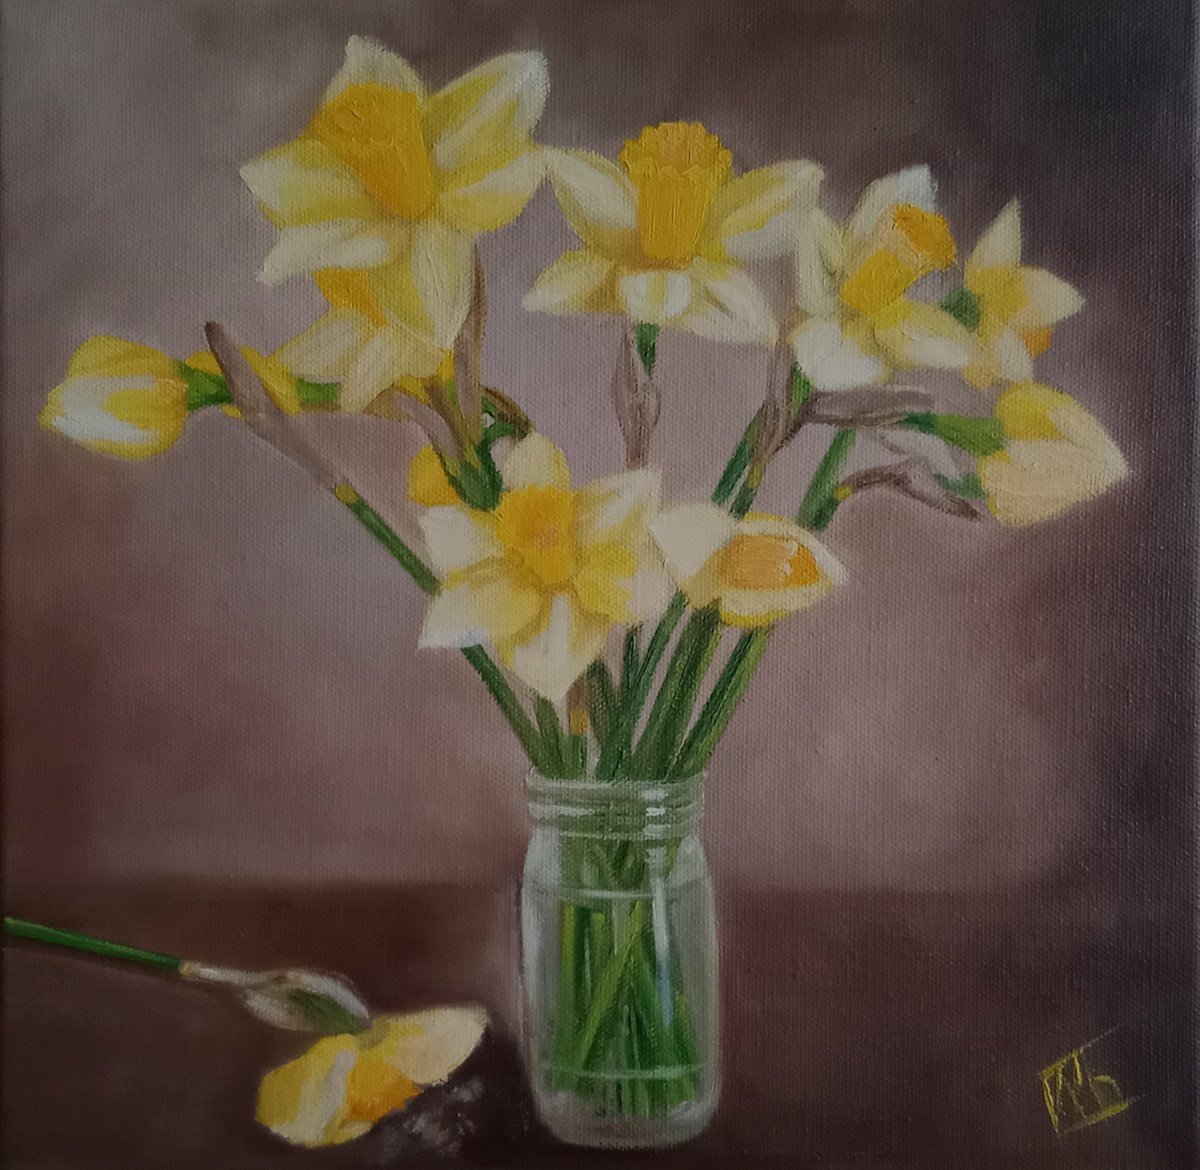 Yellow Daffodils by Ira Whittaker